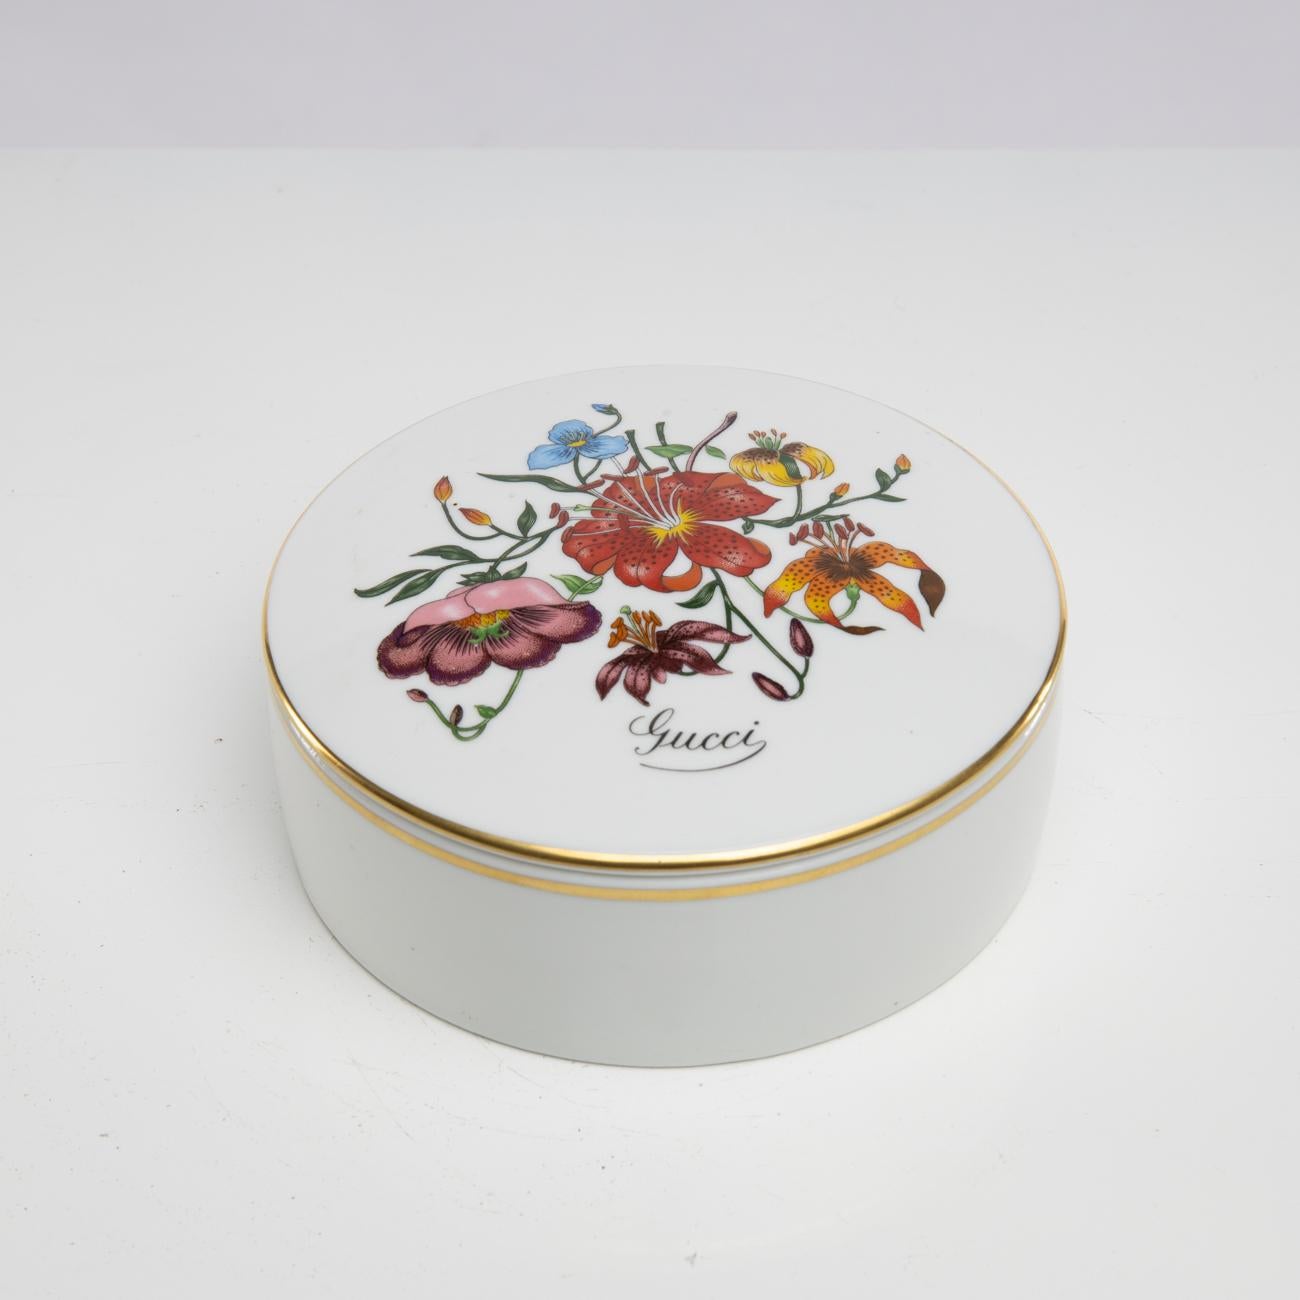 Dose mit Porzellaneinlage, verziert mit dem ikonischen Flora-Motiv:
Hübsche Porzellandose, deren Deckel mit dem Morif 